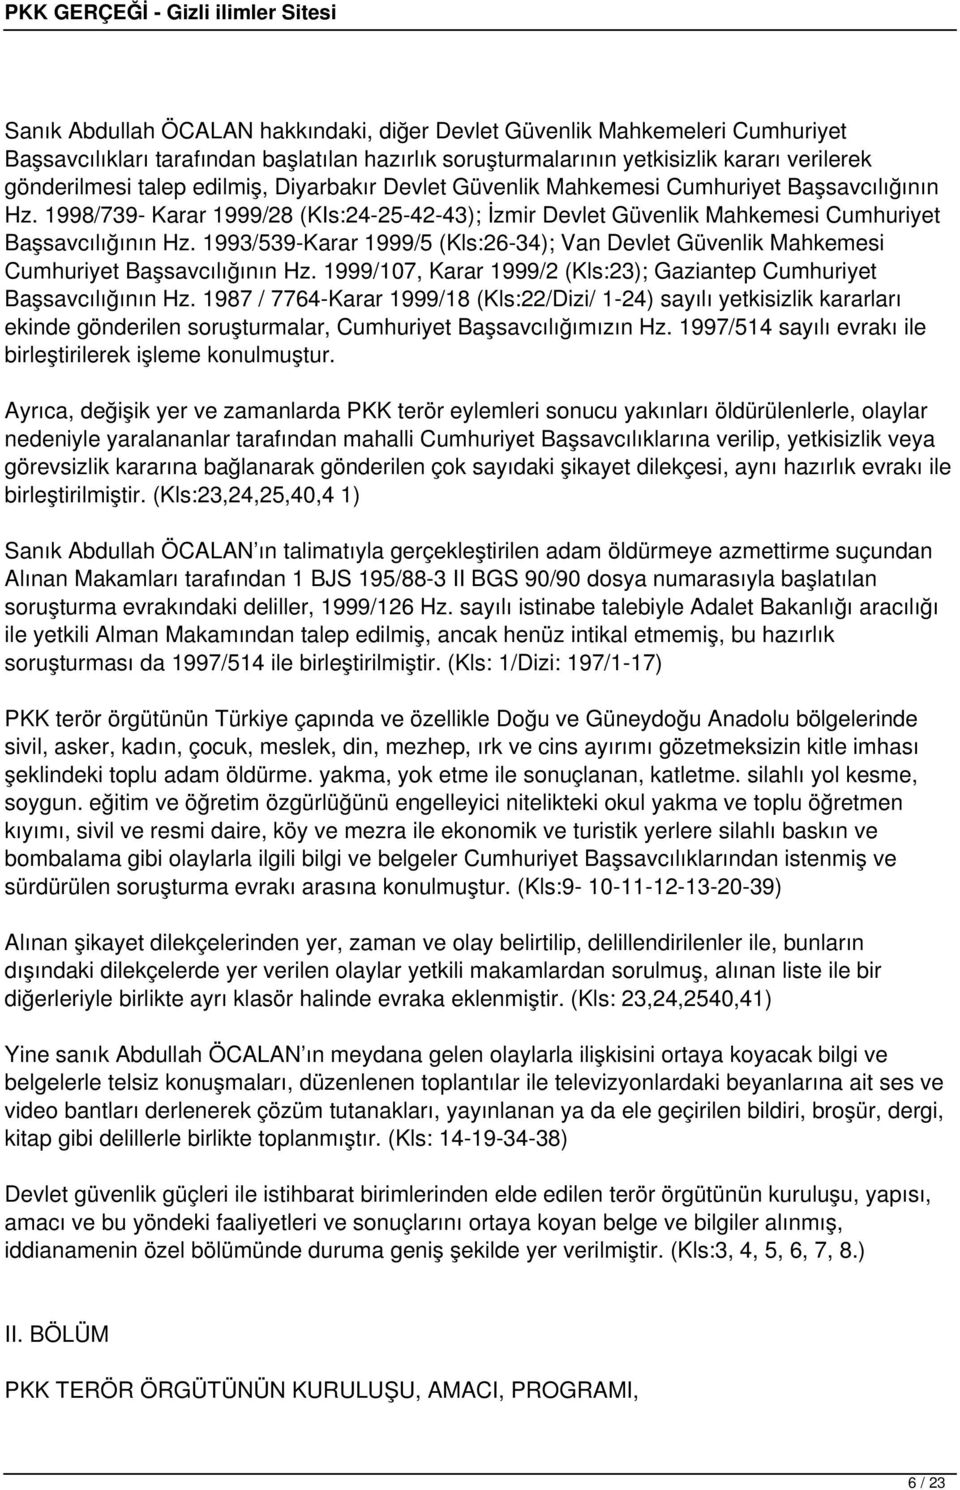 1993/539-Karar 1999/5 (Kls:26-34); Van Devlet Güvenlik Mahkemesi Cumhuriyet Başsavcılığının Hz. 1999/107, Karar 1999/2 (Kls:23); Gaziantep Cumhuriyet Başsavcılığının Hz.